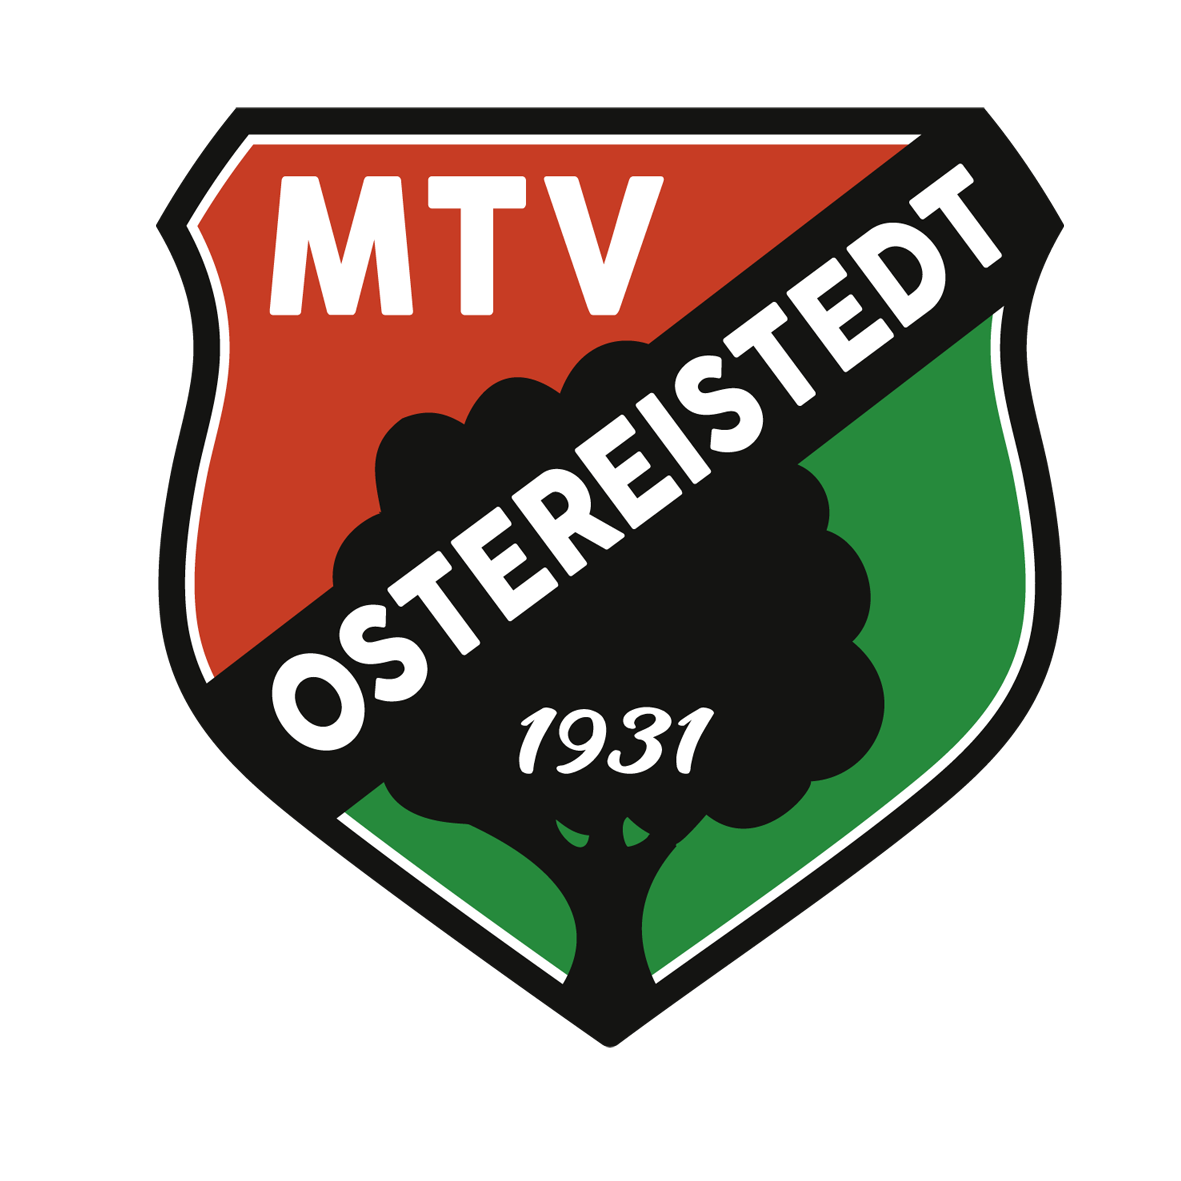 MTV Ostereistedt